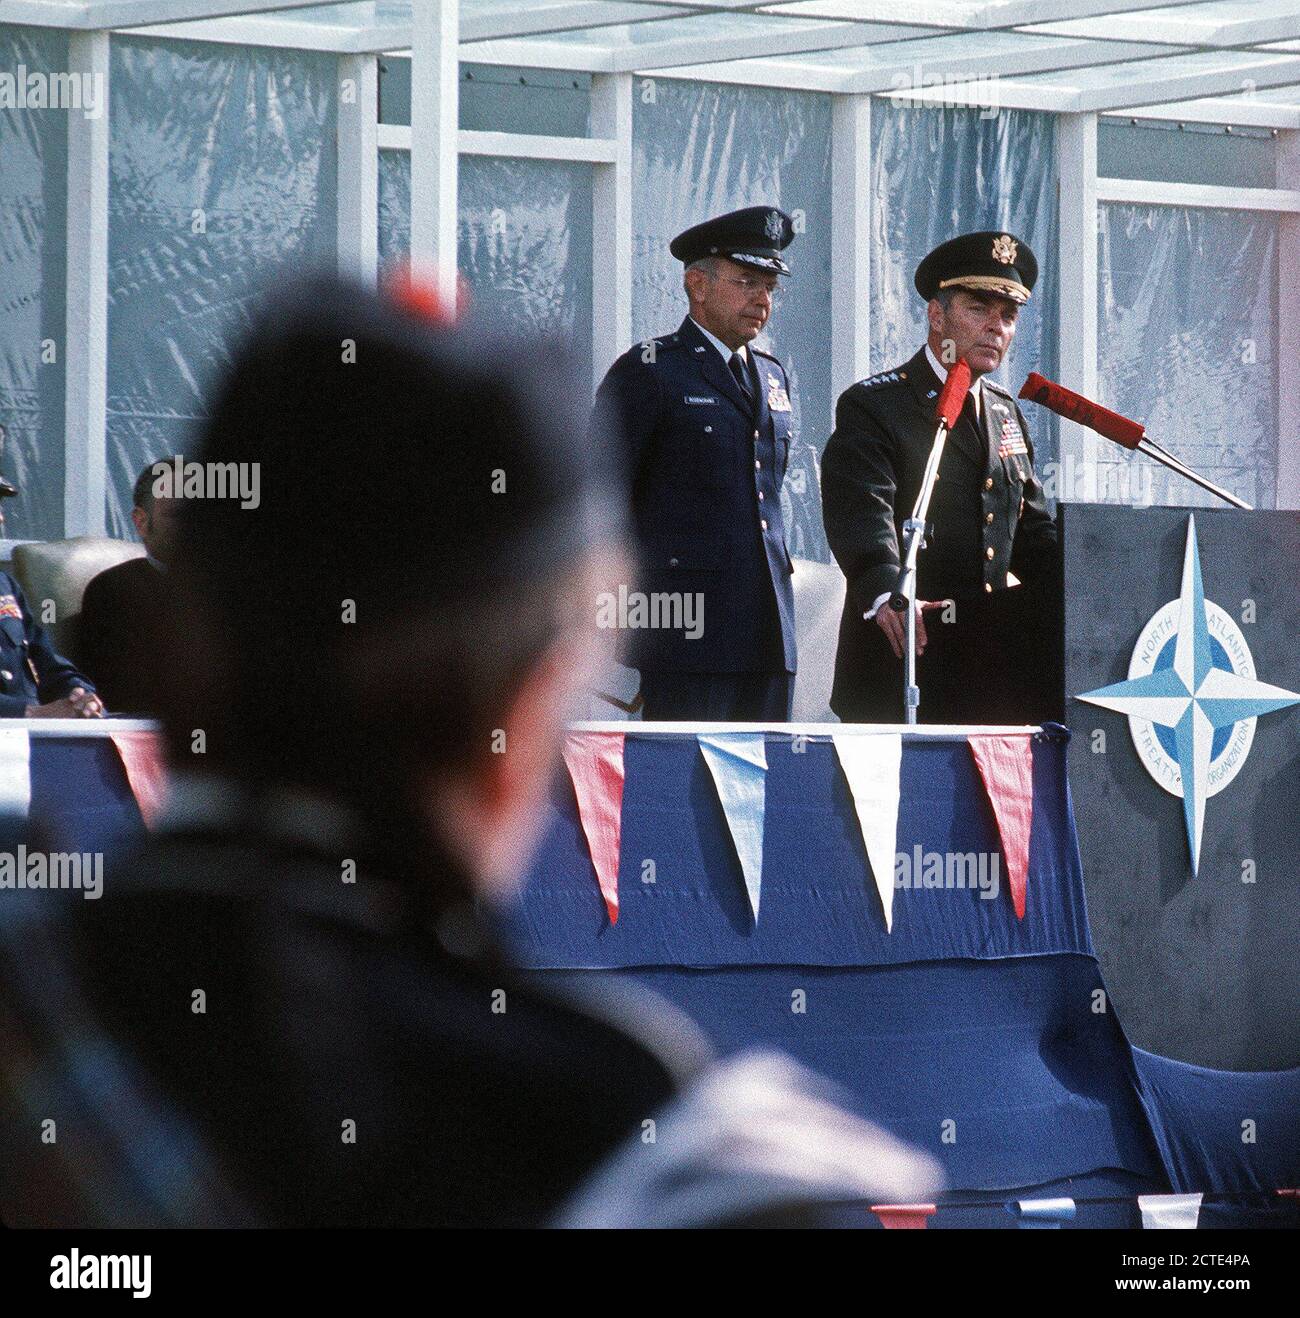 GEN Alexander M. Haig, Kommandeur der NATO-Streitkräfte in Europa, liefert ein Grußwort während der begrüßungszeremonie Für 16 F-111 Piloten und ihre Flugzeuge. MGEN Evan W. Rosecrans wartet auf seine Umdrehung zu sprechen Stockfoto